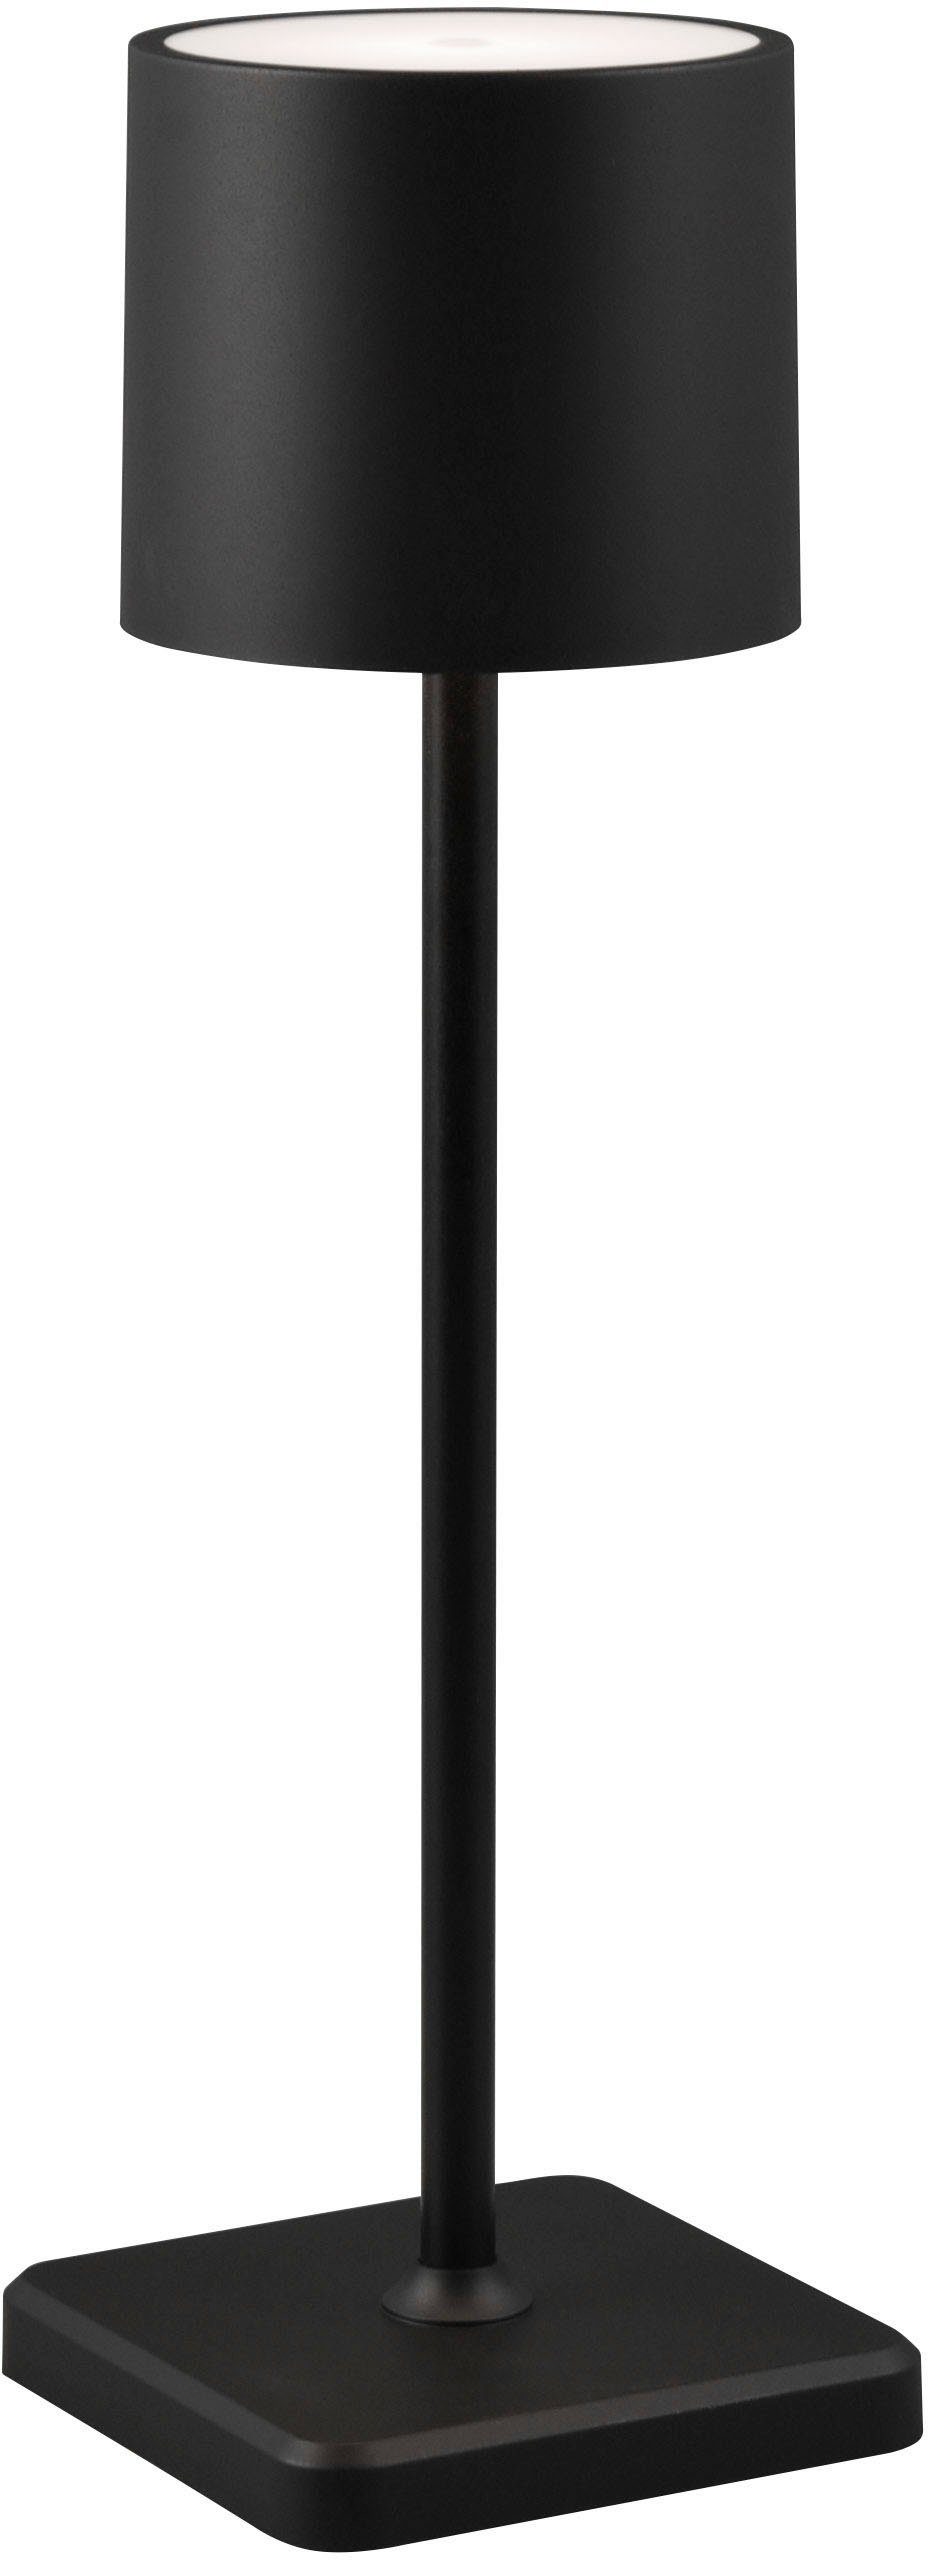 Fernandez, TRIO Garten LED Leuchten USB fest USB-Ladefunktion, LED Akku Lichtfarbe kaltweiß, integriert, Dimmfunktion, matt warmweiß schwarz dimmbar einstellbar Ladestation Tischlampe Farbwechsler, Außen-Tischleuchte -